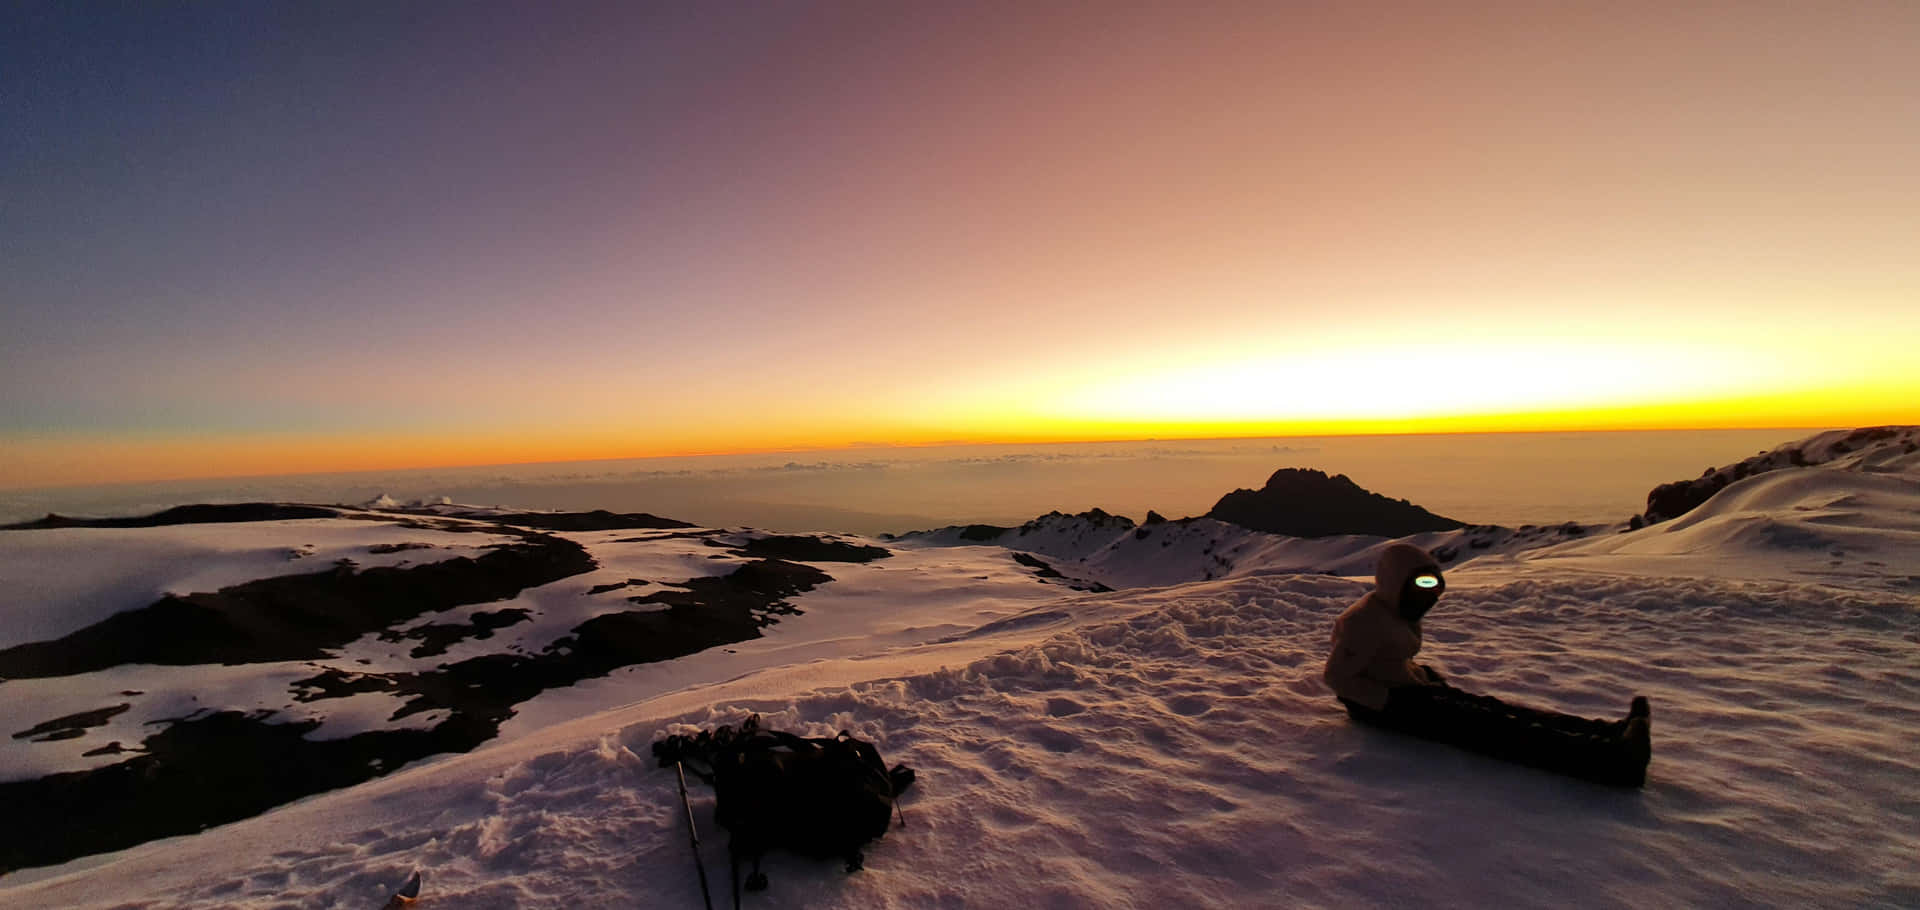 Sunrise At Mount Kilimanjaro Wallpaper